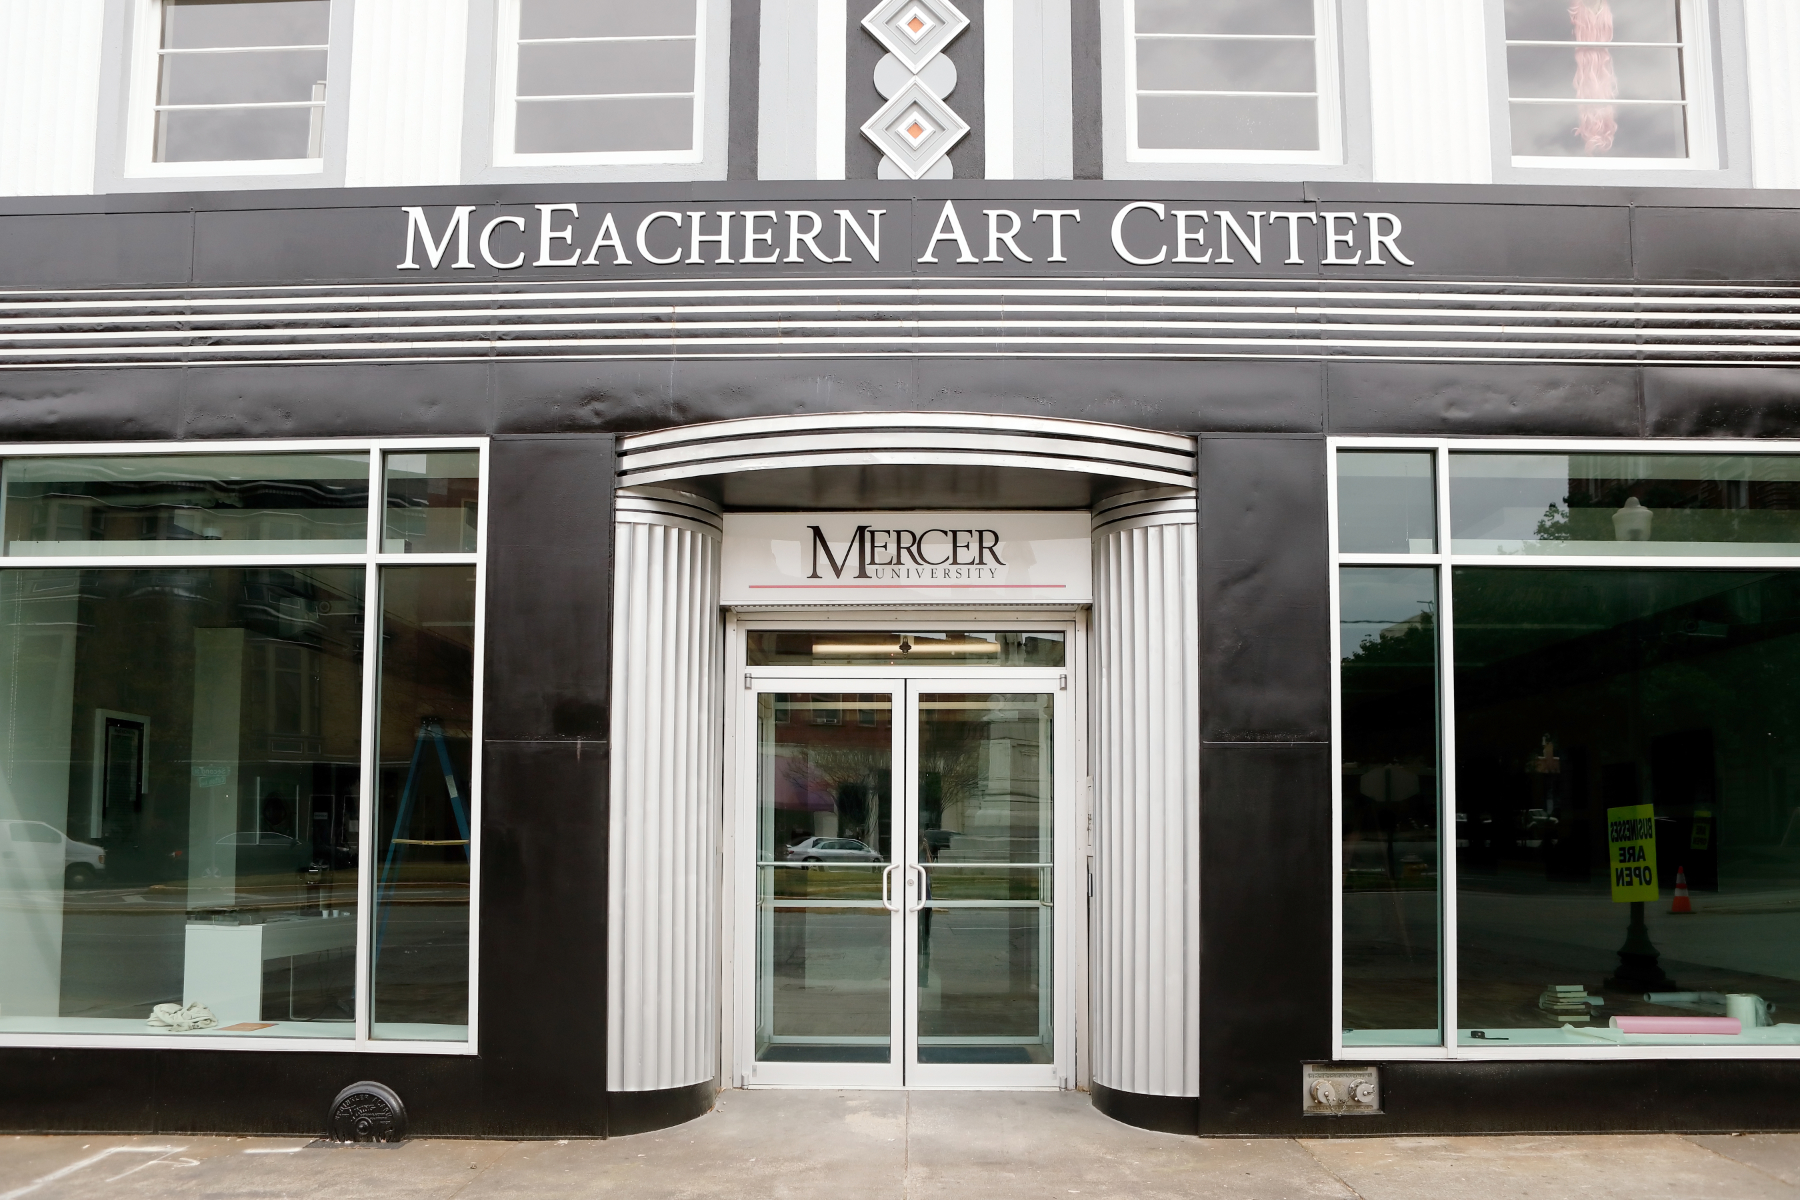 the front facade of the mceachern art center